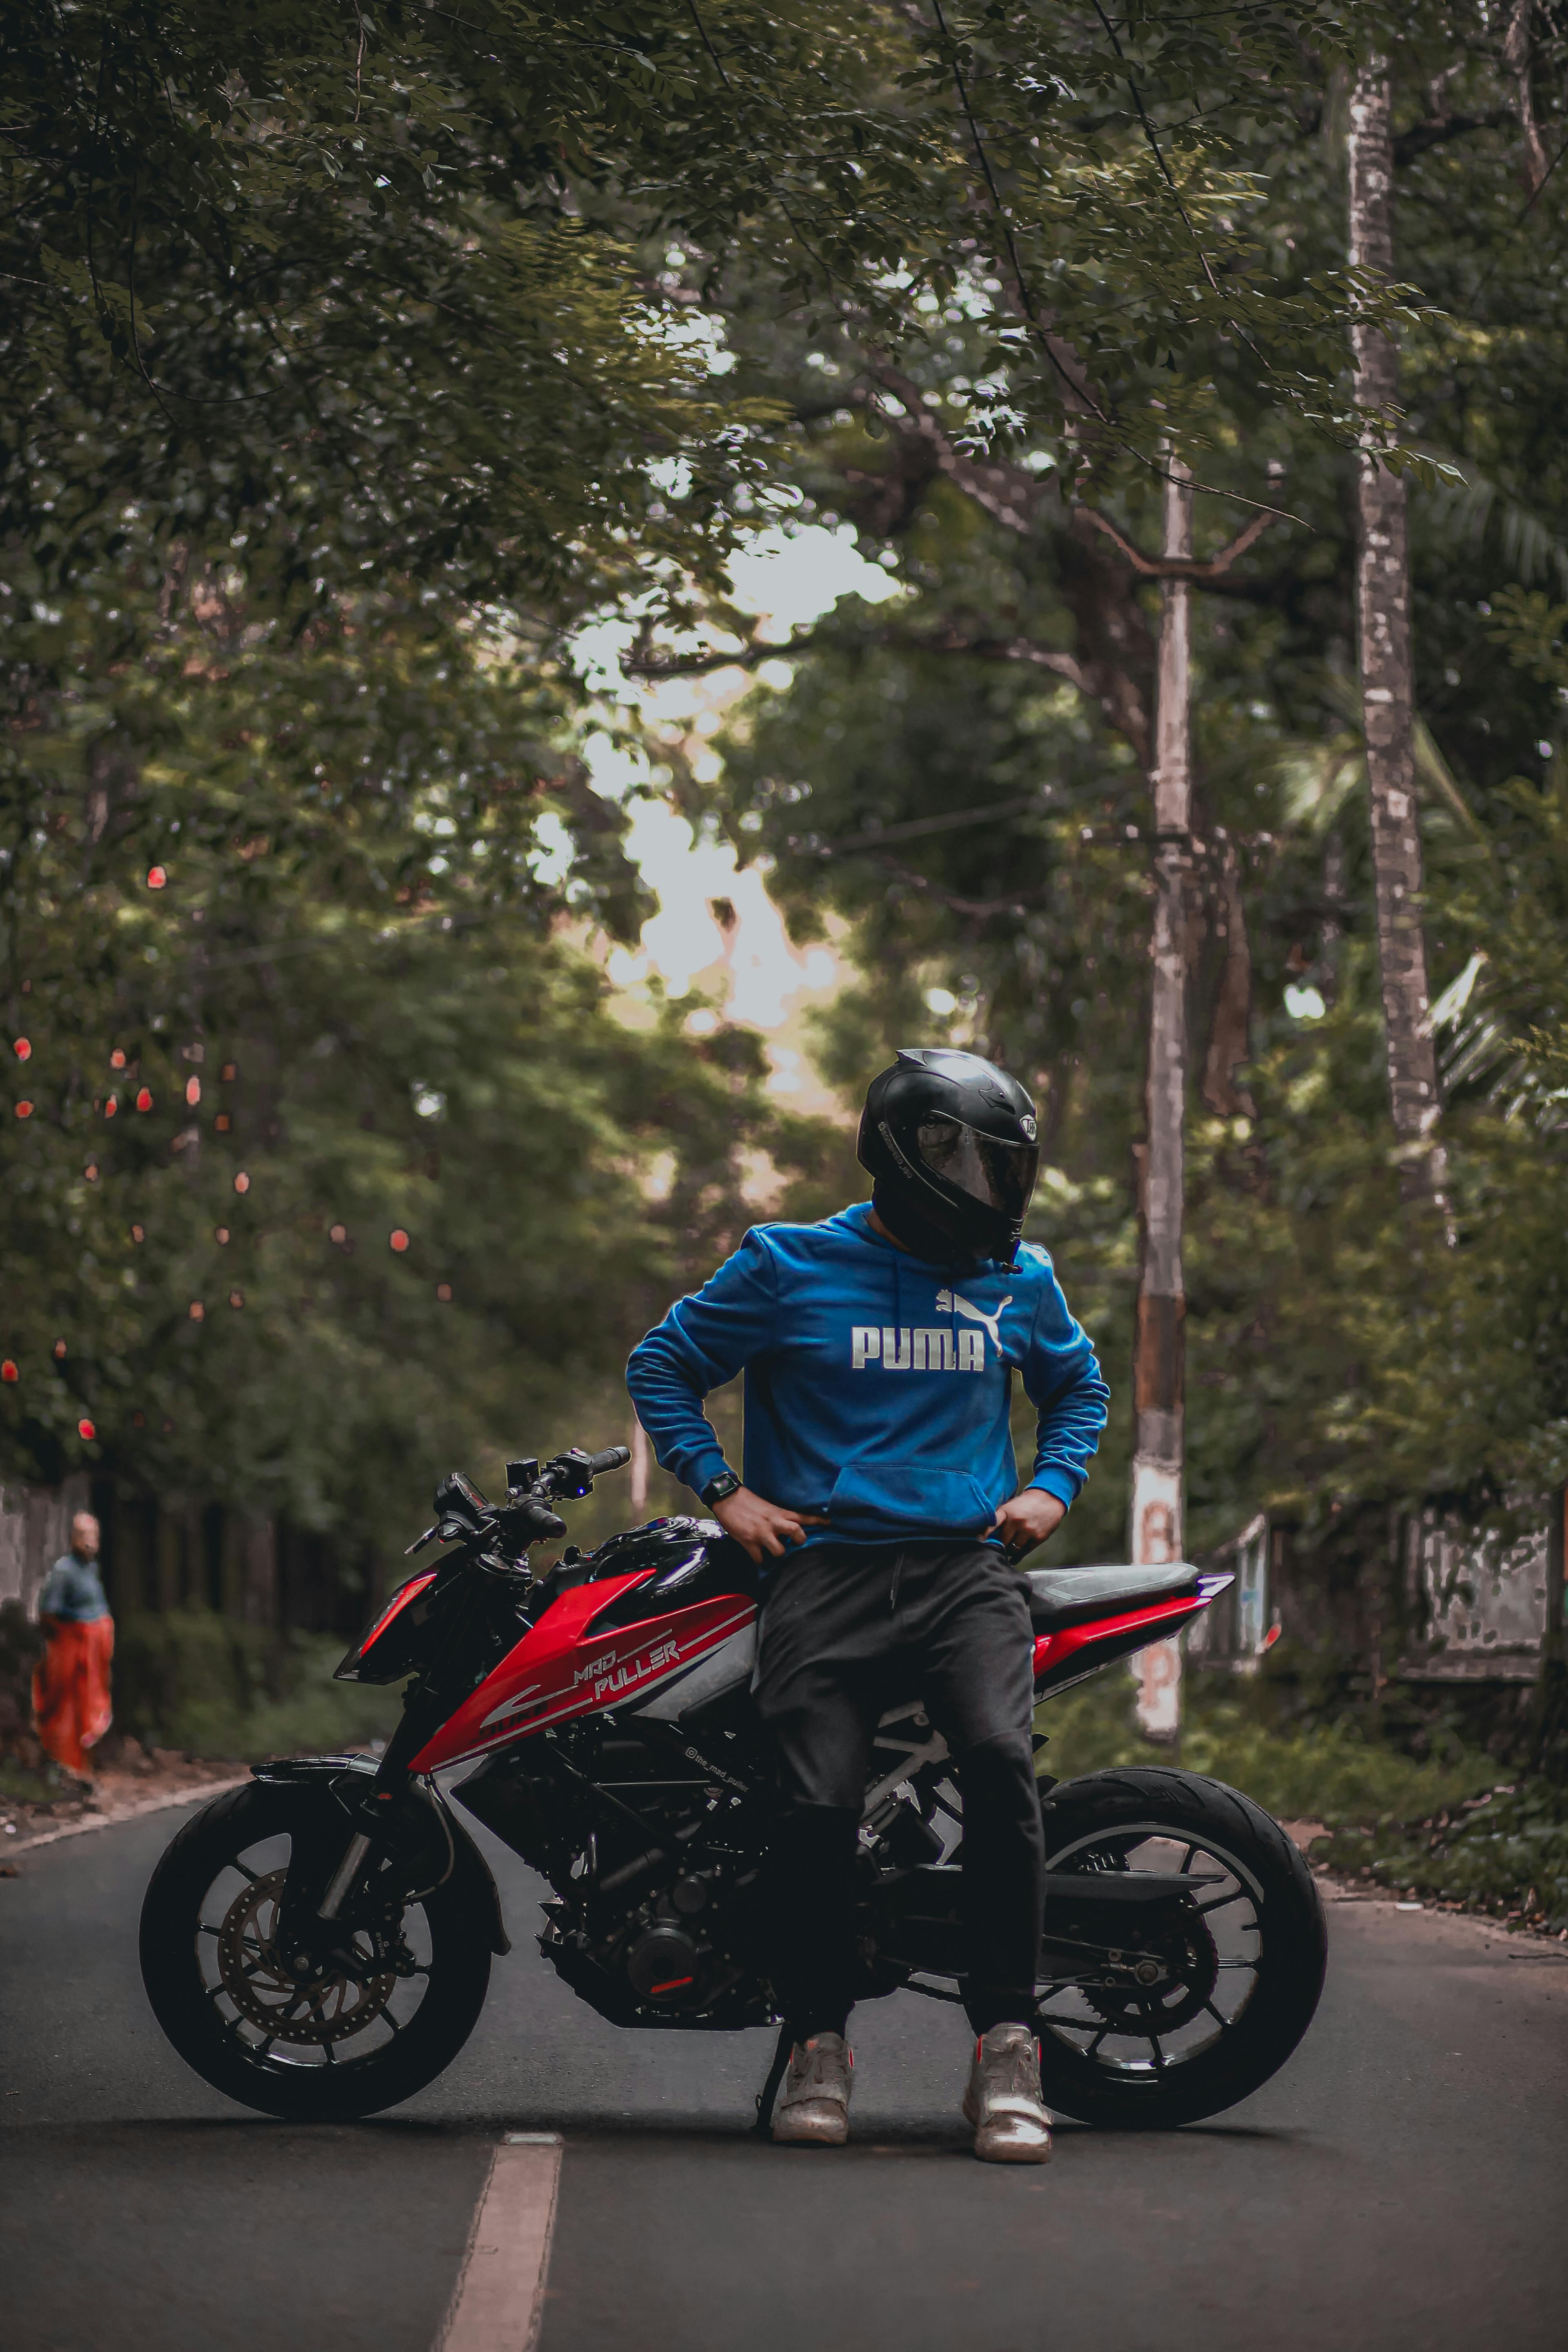 KTM Duke bike lover Images • ꧁༒❤️👑Rs Girls👑❤️༒꧂  (@sulega_ramachandren0725) on ShareChat